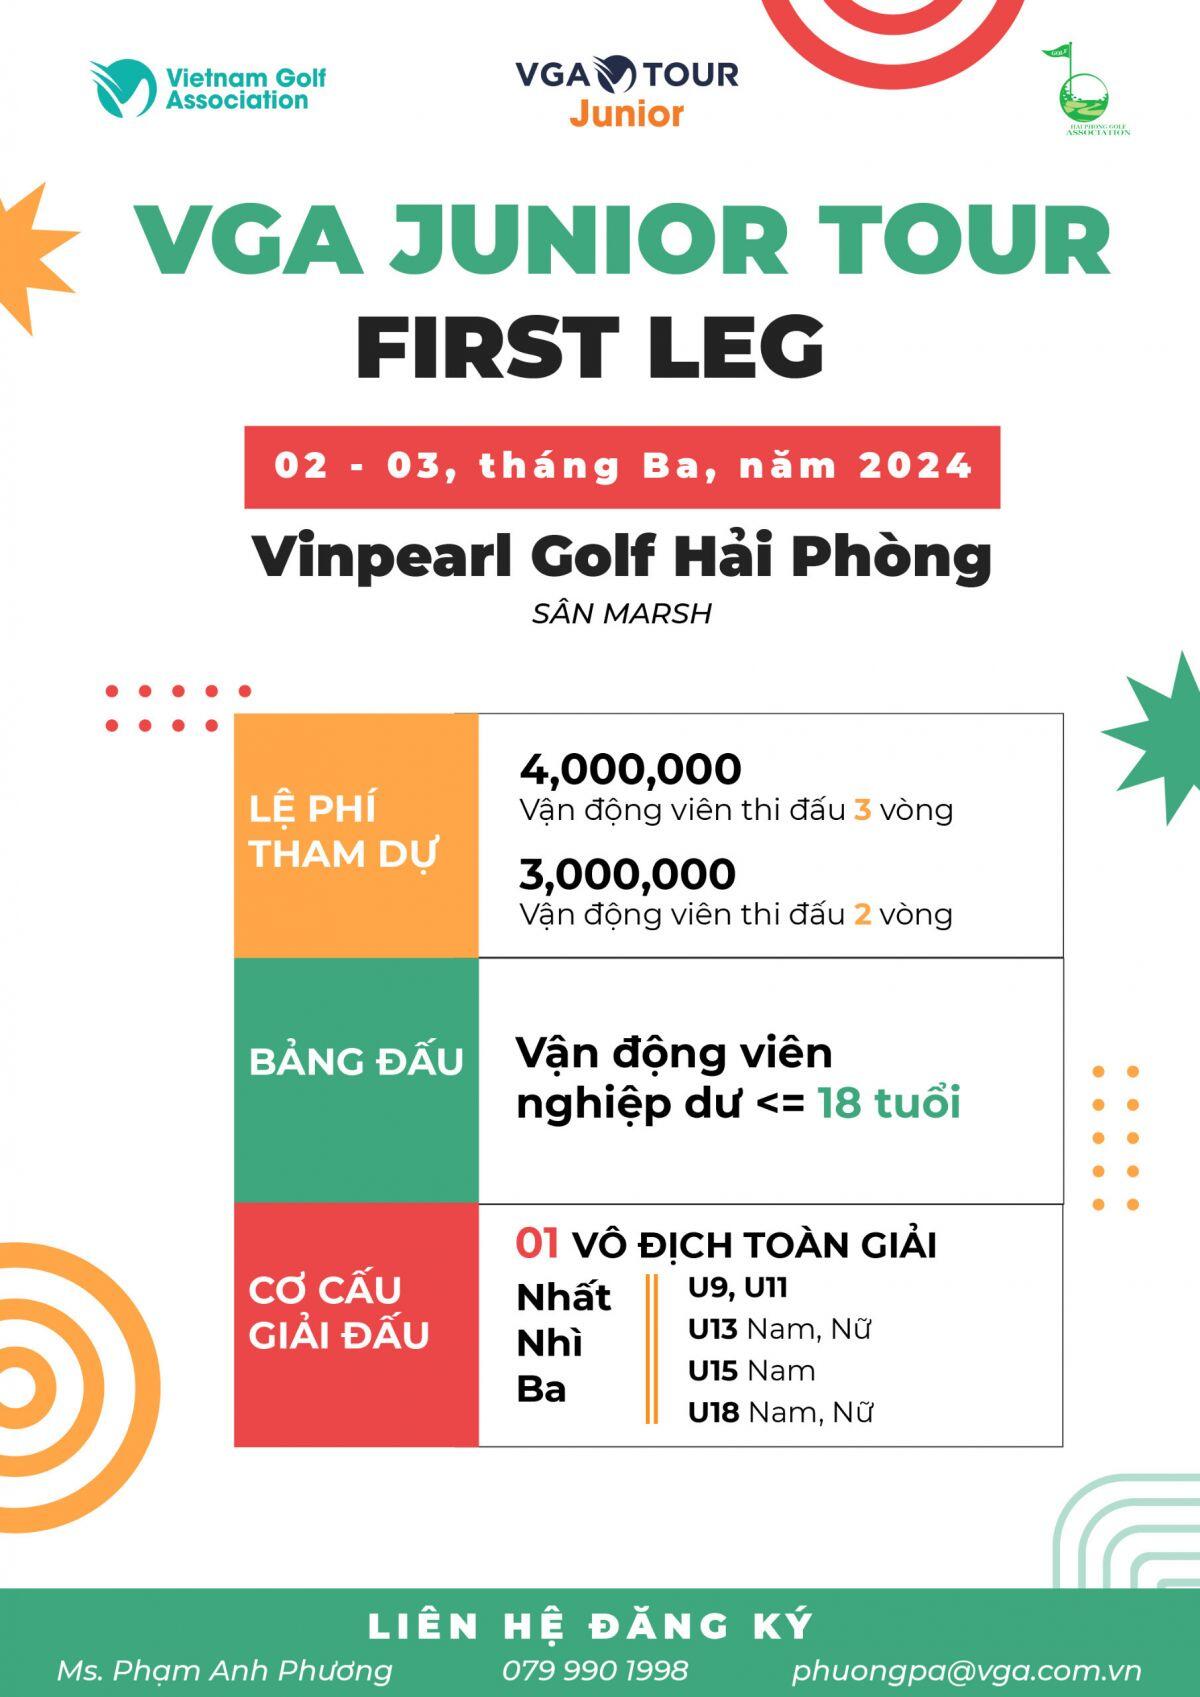 Sắp khởi tranh giải đấu chặng 1 VGA Junior Tour - 1st Leg VGA Junior Tour 2024